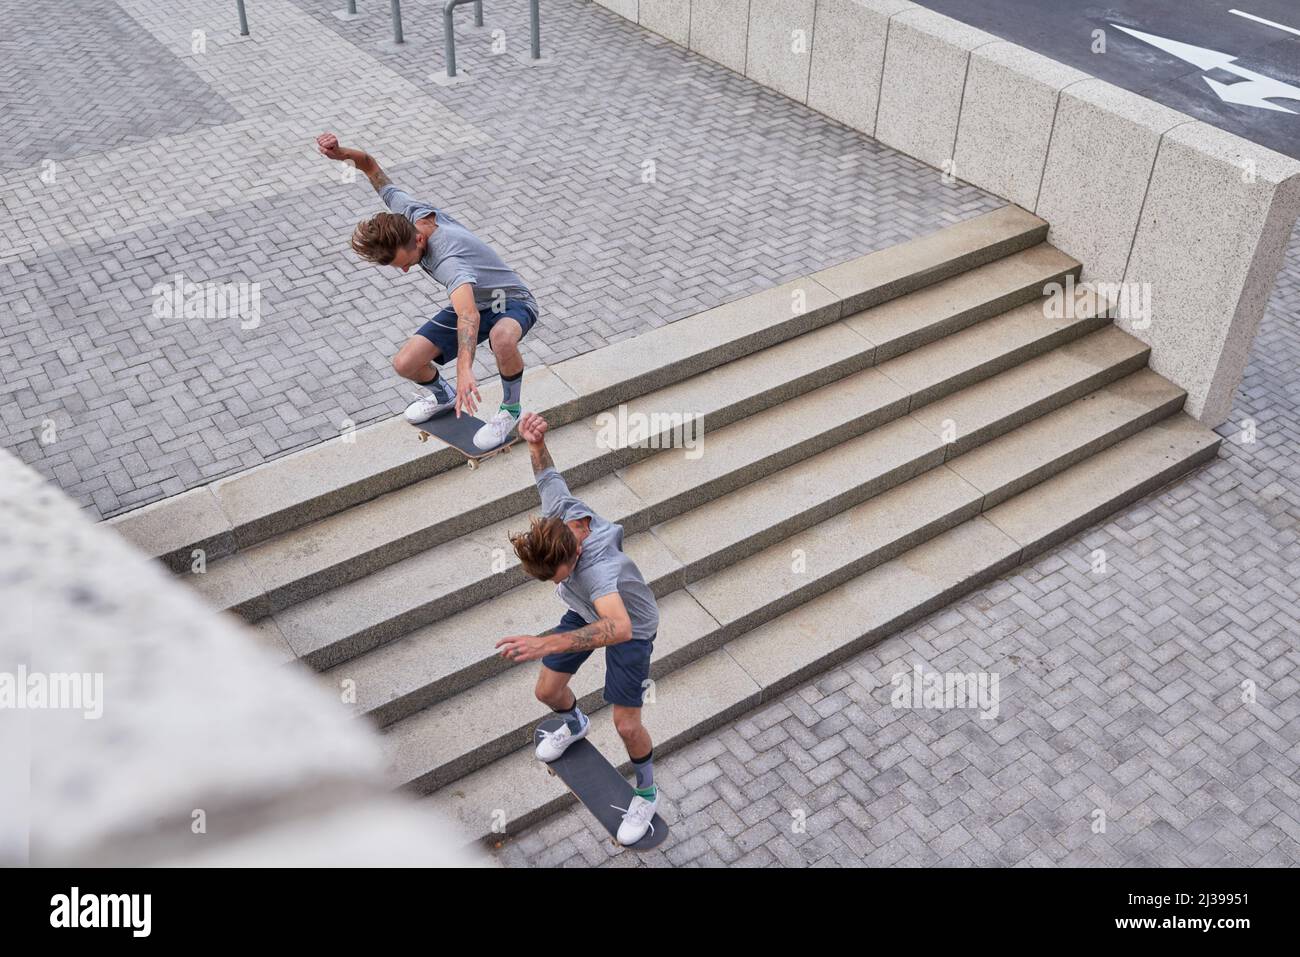 Le patinage est plus qu'un passe-temps. Photo de skateboarders dans la ville. Banque D'Images